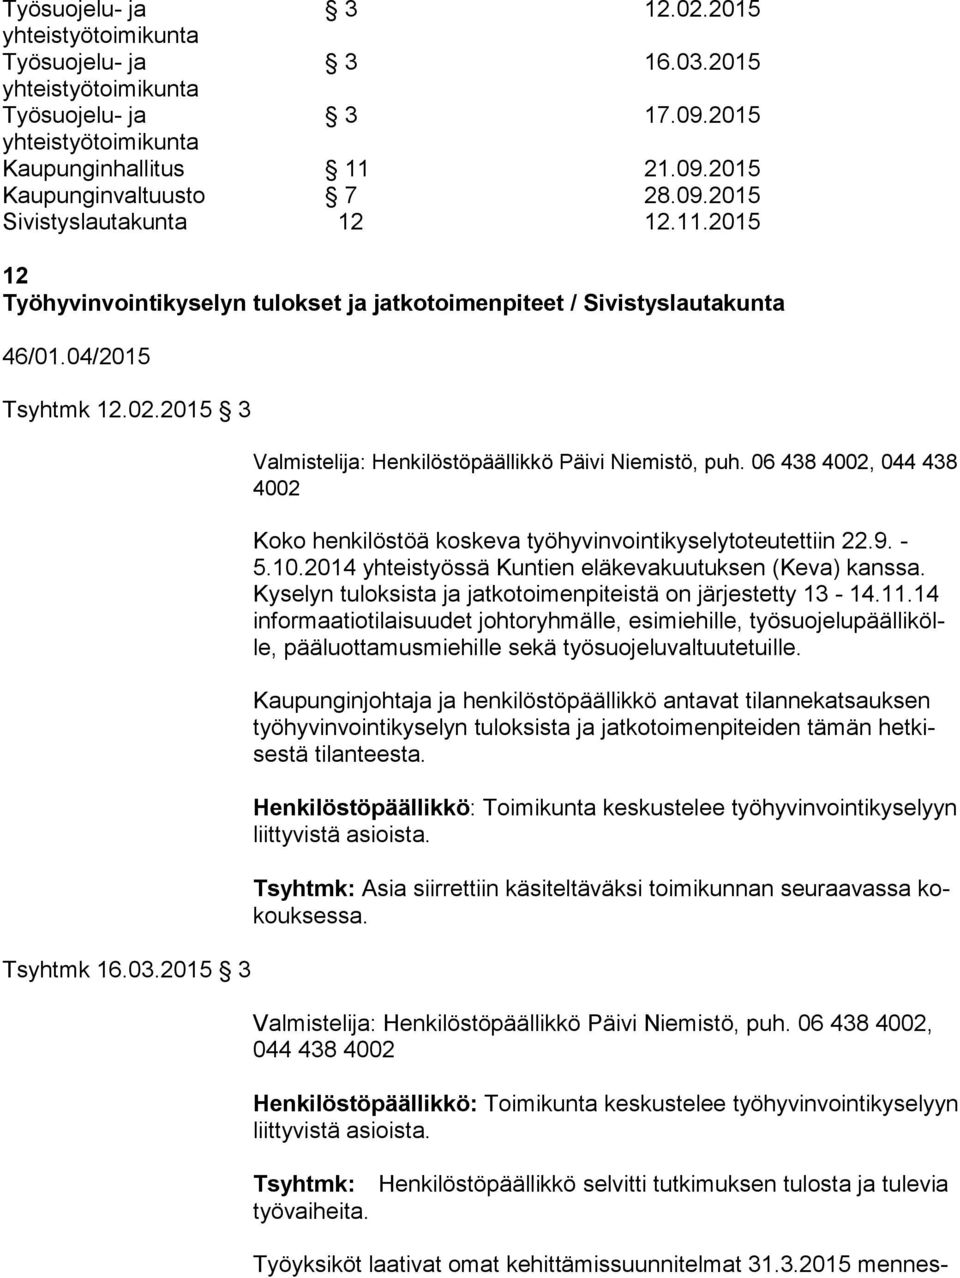 2015 3 Valmistelija: Henkilöstöpäällikkö Päivi Niemistö, puh. 06 438 4002, 044 438 4002 Koko henkilöstöä koskeva työhyvinvointikyselytoteutettiin 22.9. - 5.10.